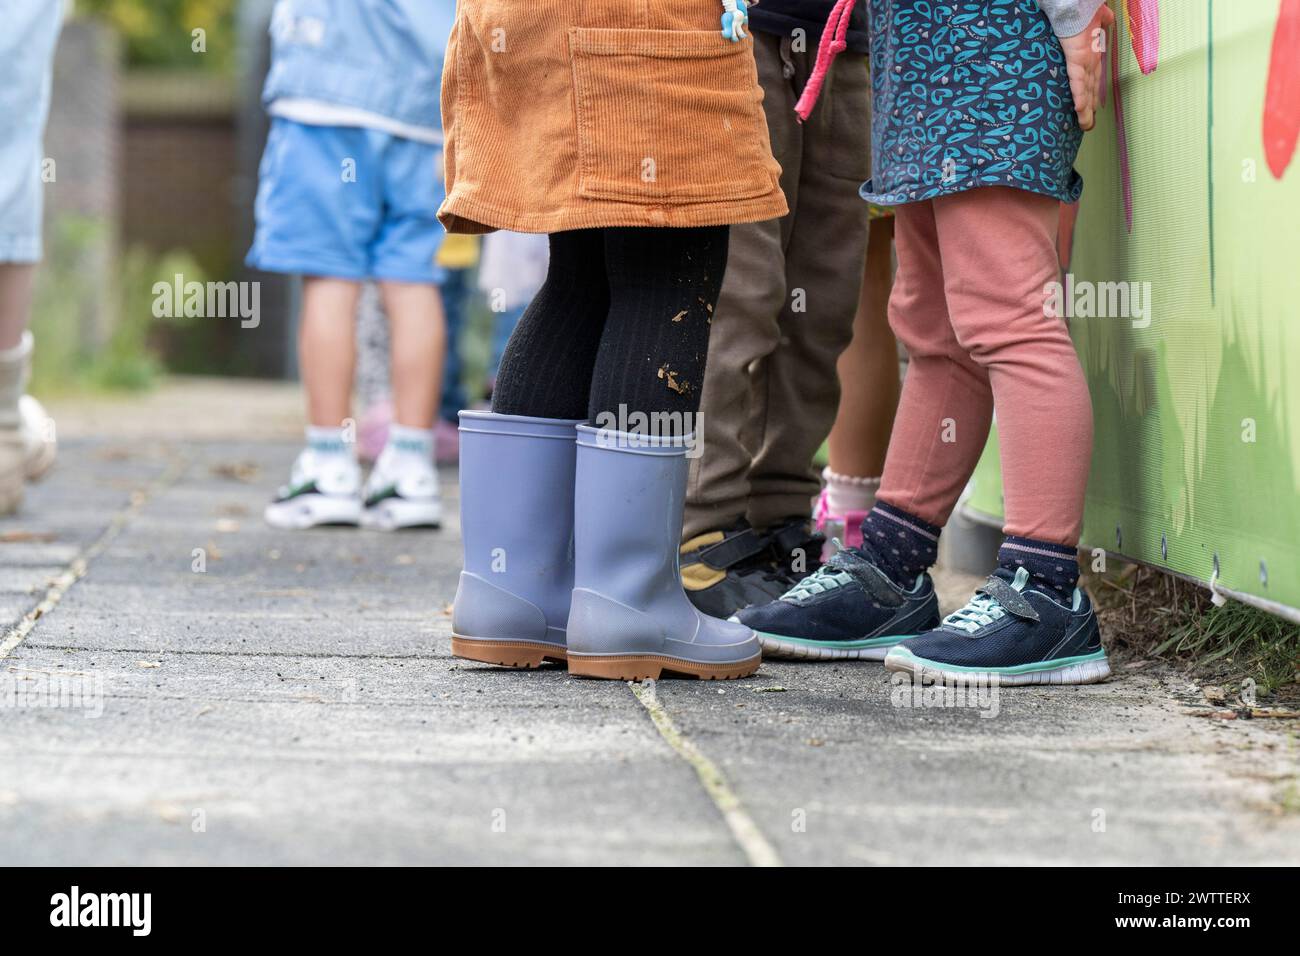 Die Kinder stehen vor einem bunten Zaun und präsentieren eine Vielzahl von Schuhen und verspielter Kleidung. Stockfoto